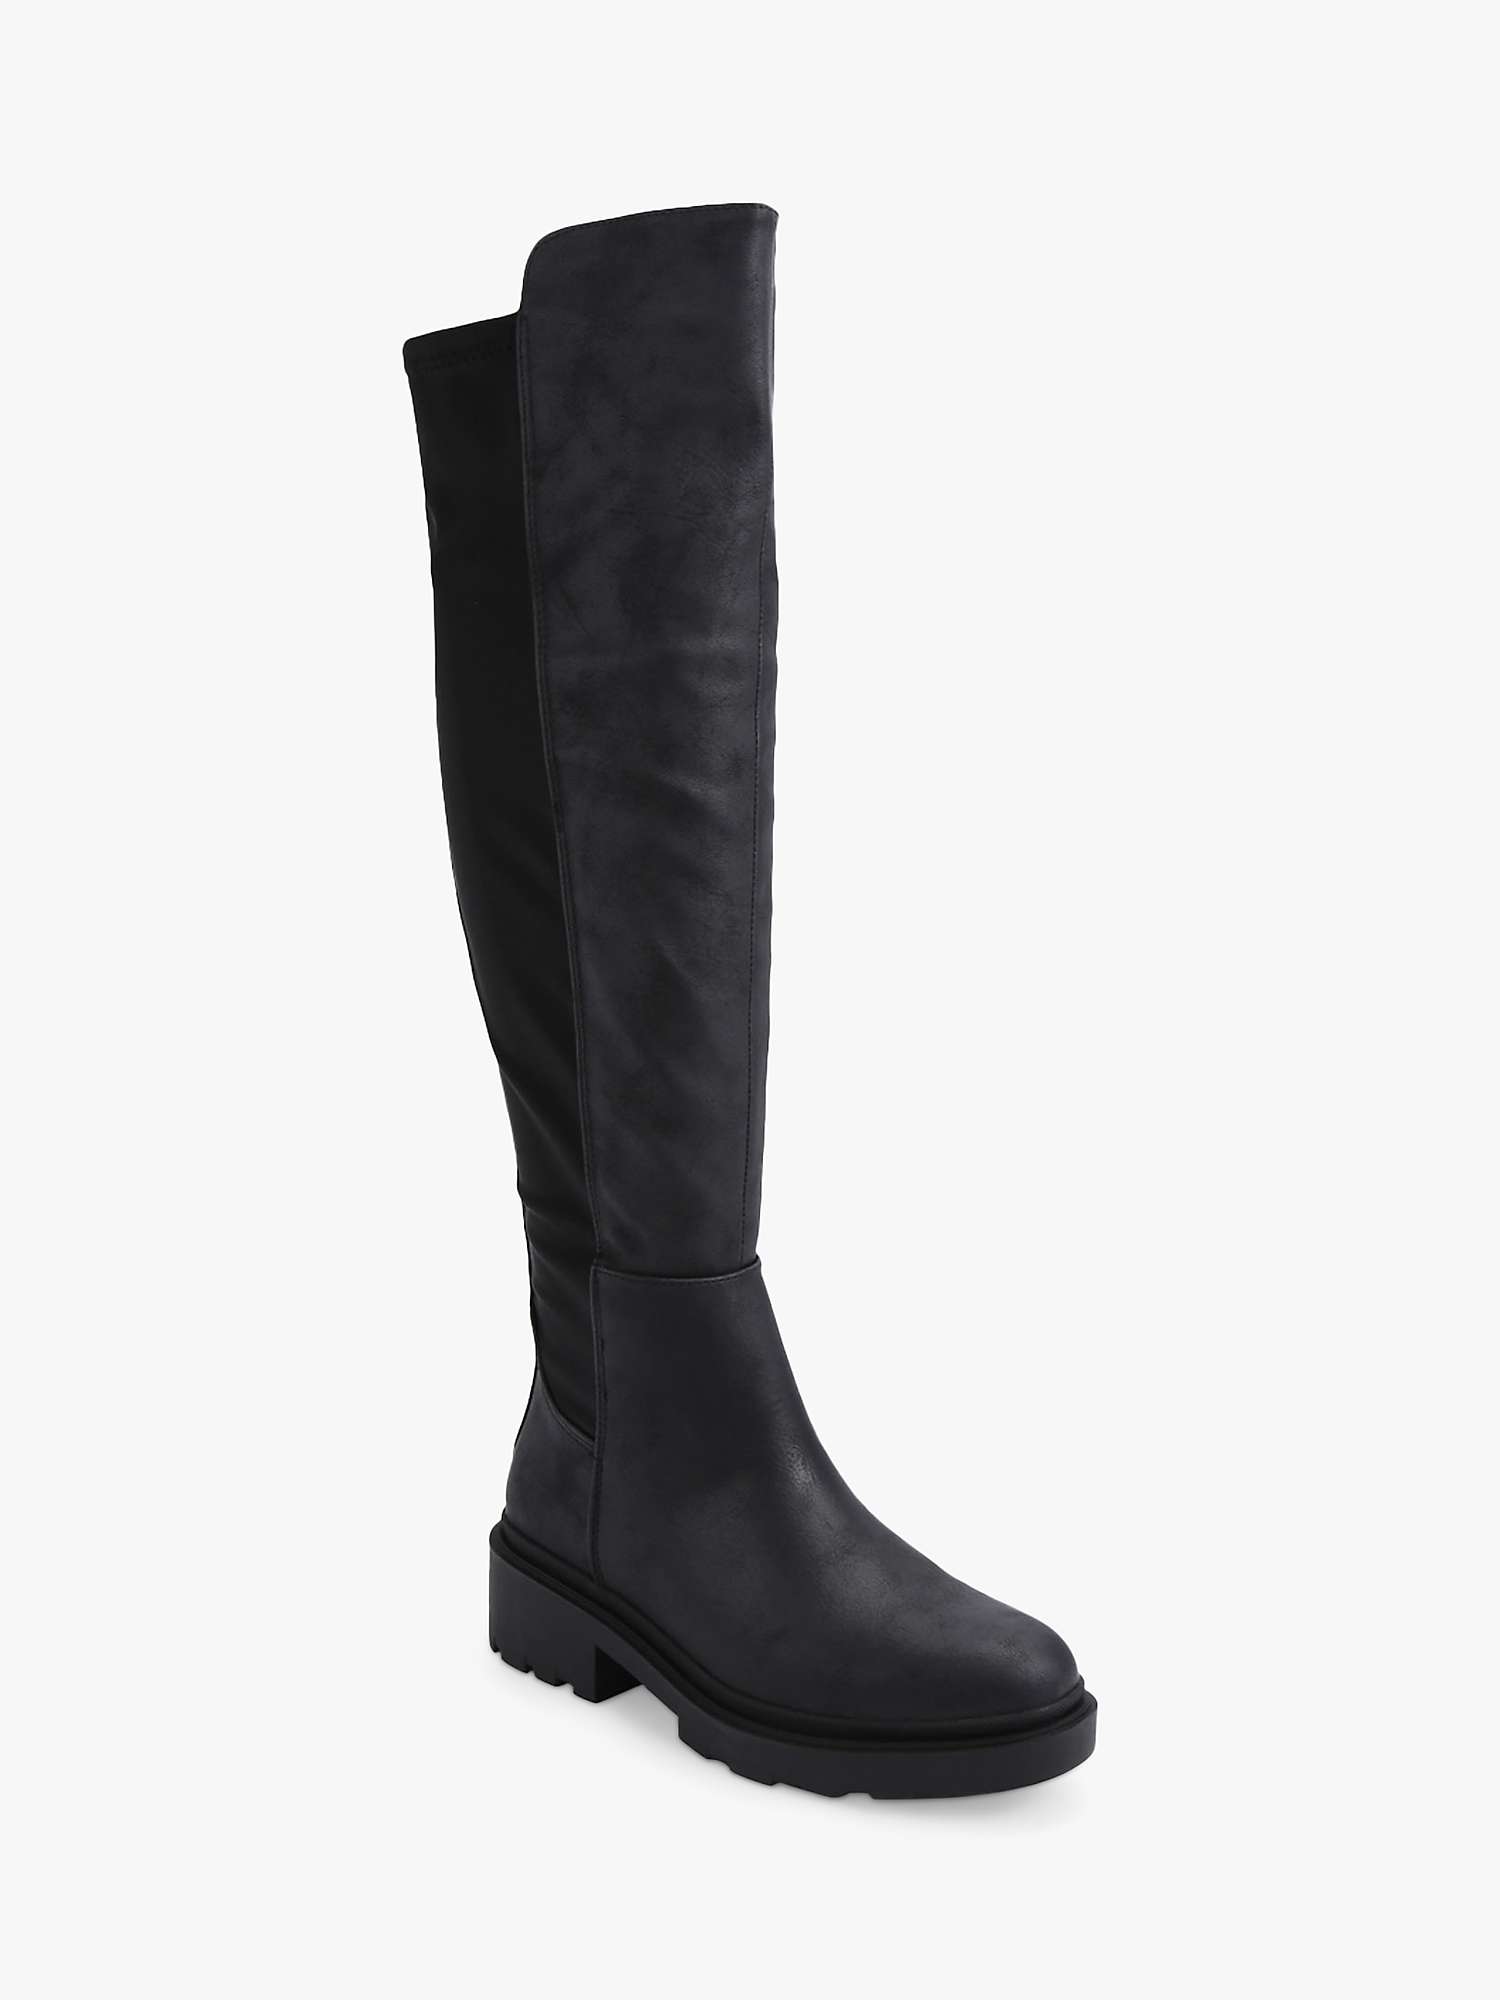 Buy Carvela Dash 50/50 Knee High Boots, Black Online at johnlewis.com